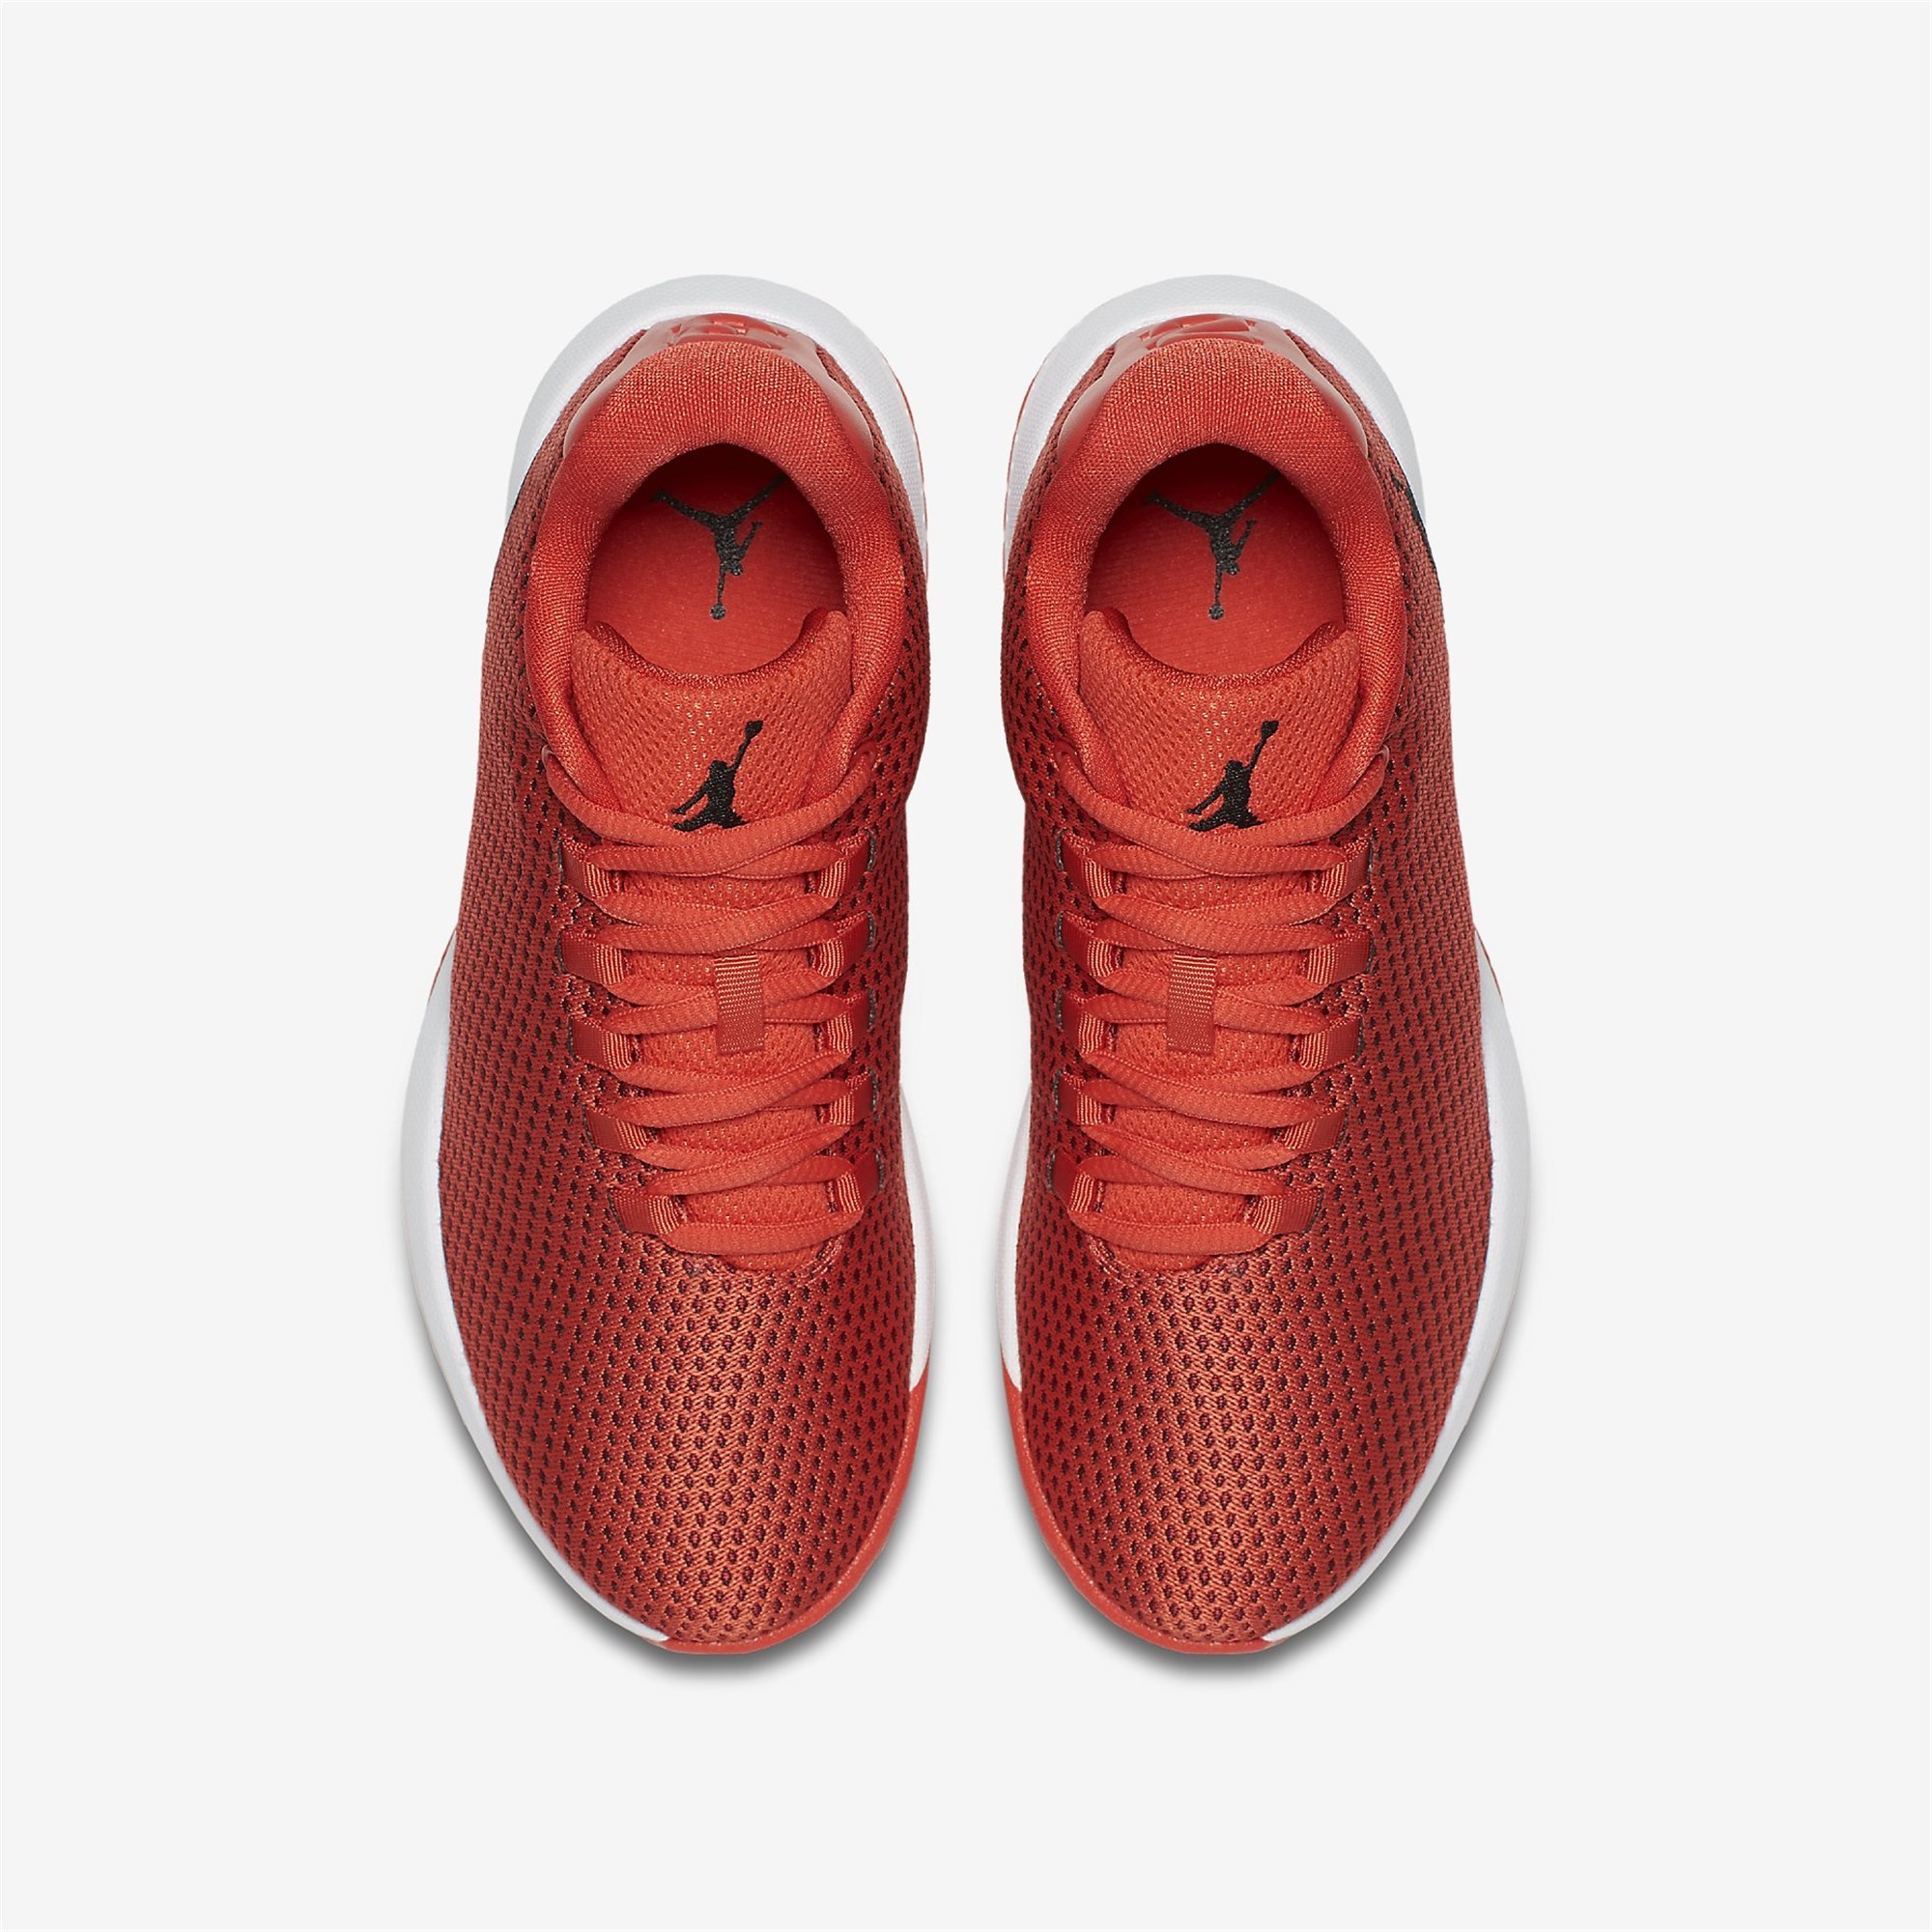 Nike Jordan B. Fly Bg Çocuk Basketbol Ayakkabısı Ürün kodu: 881446-803 |  Etichet Sport